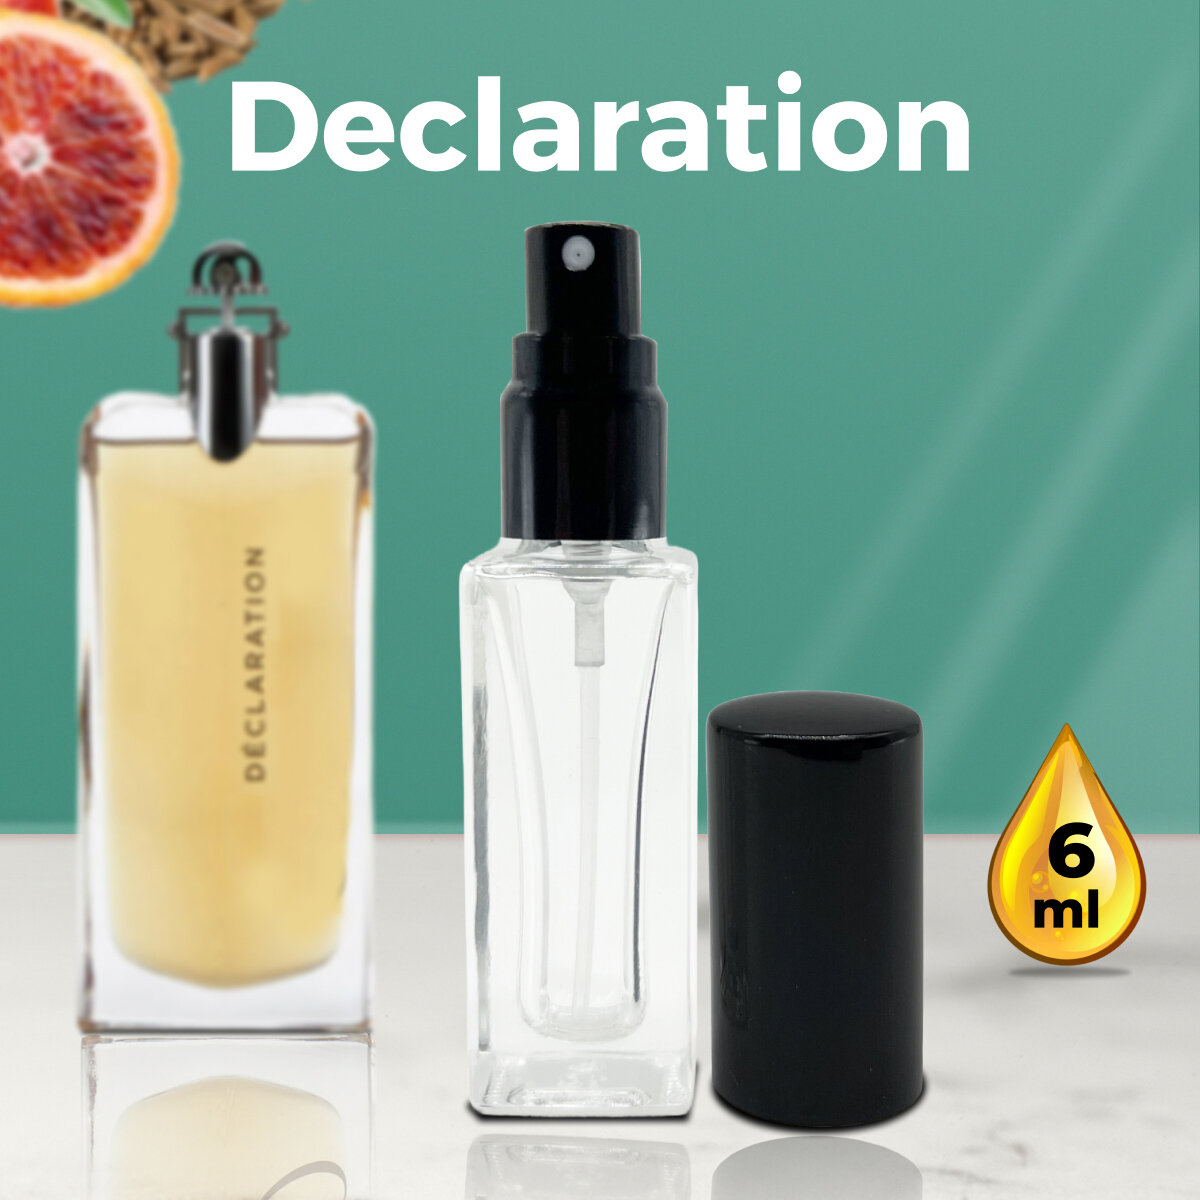 "Declaration" - Масляные духи мужские, 6 мл + подарок 1 мл другого аромата